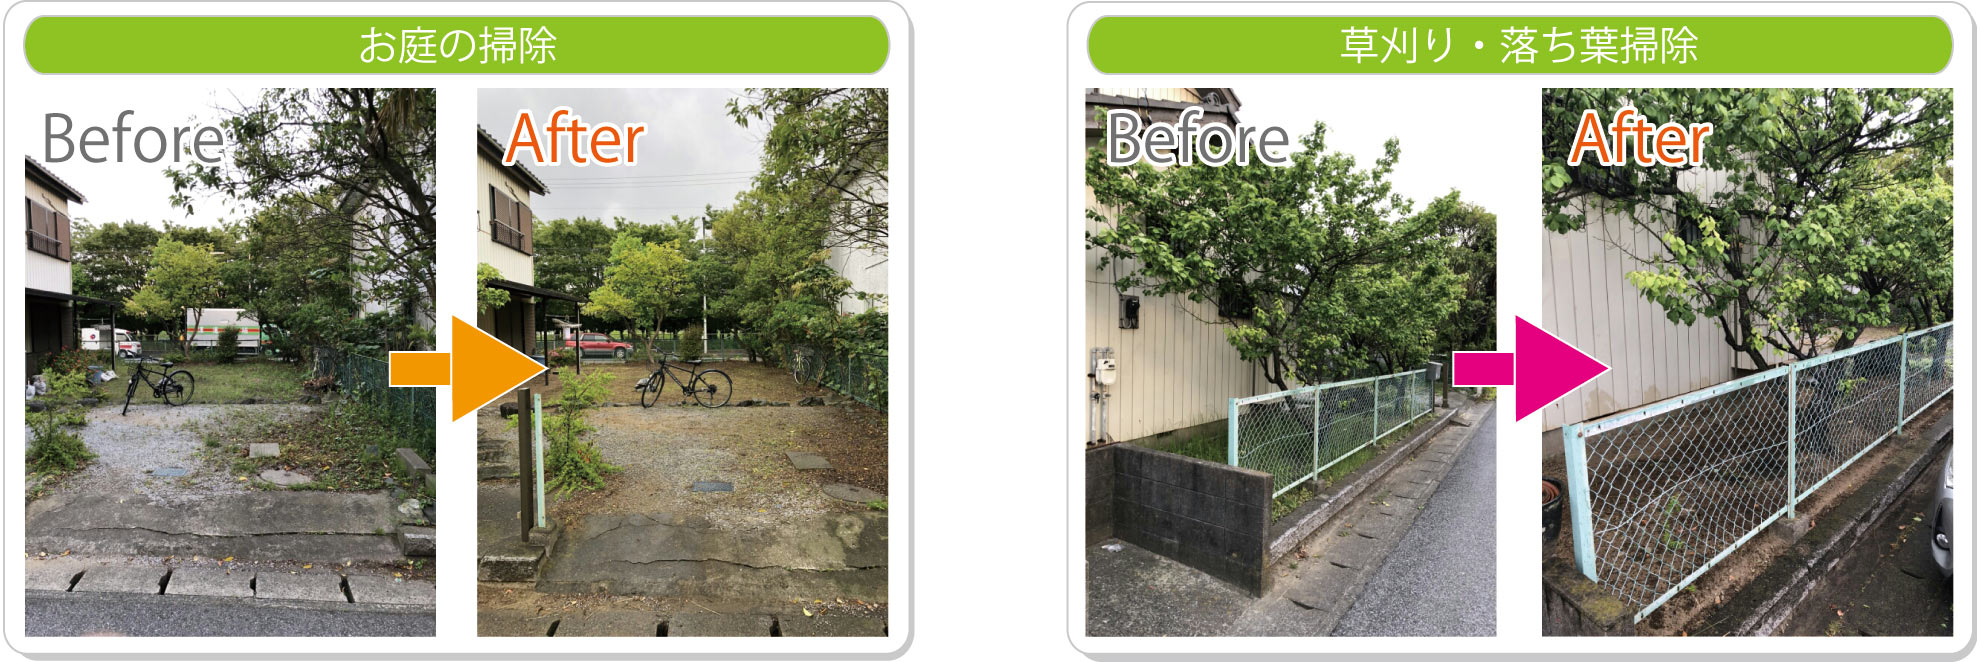 東京美化係 | ご家庭の不用品・ゴミ回収 | お庭掃除・草刈りBeforeAfterの写真